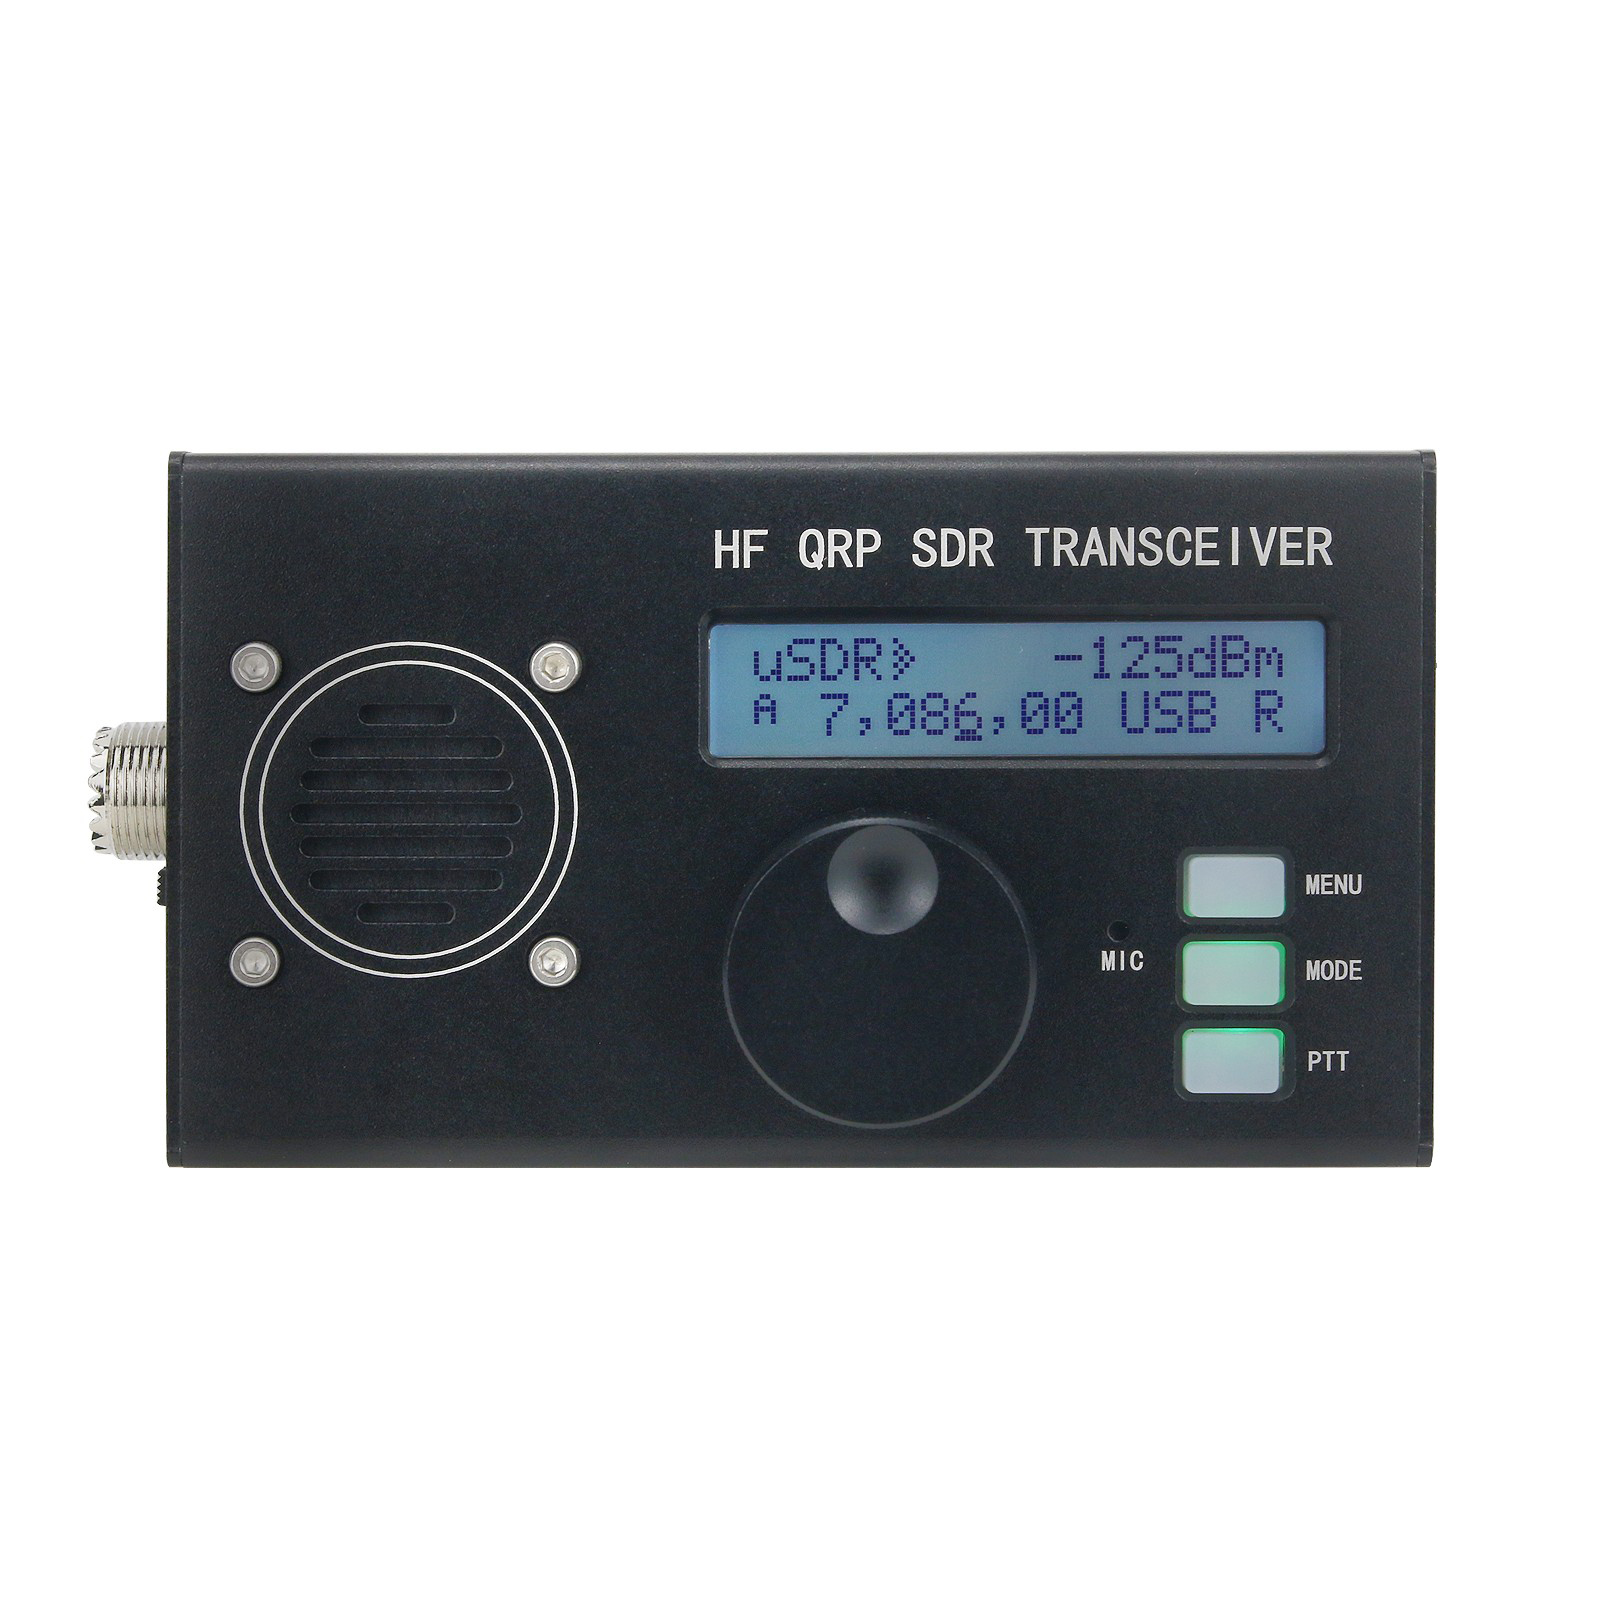 Portable-uSDX-8-Band-SDR-All-Mode-Transceiver-USB-LSB-CW-AM-FM-HF-SSB-QRP-Transceiver-QCX-SSB-with-B-1915485-1